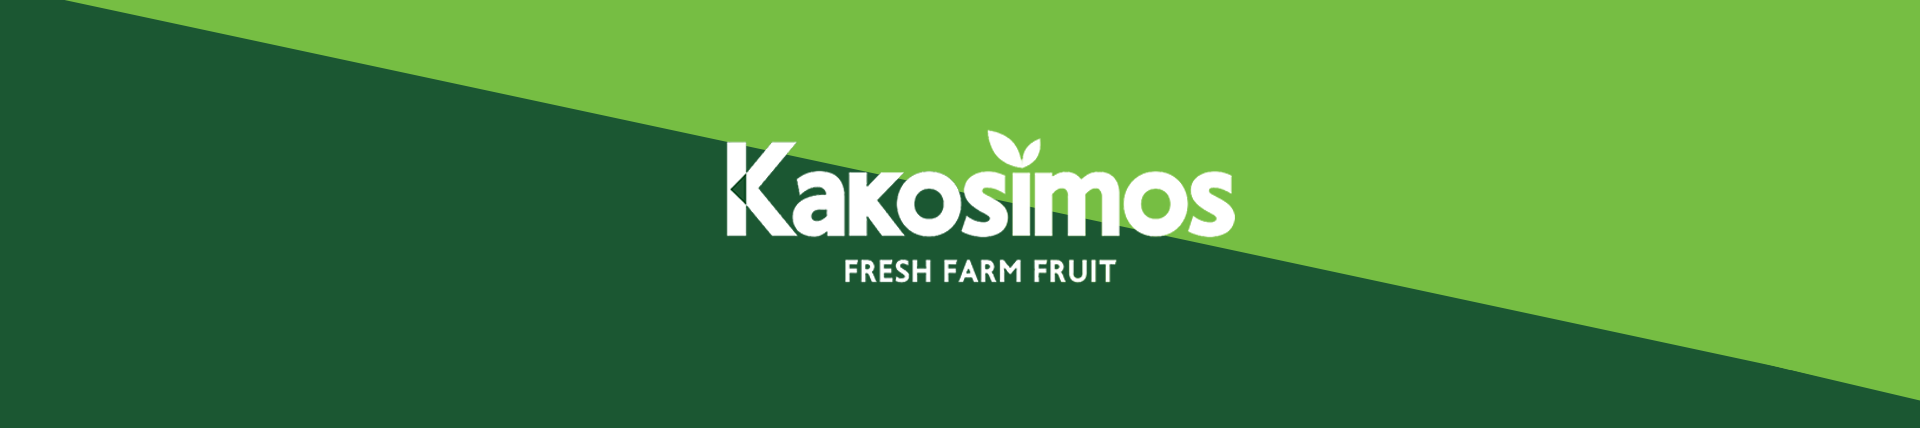 Kakosimos Farm